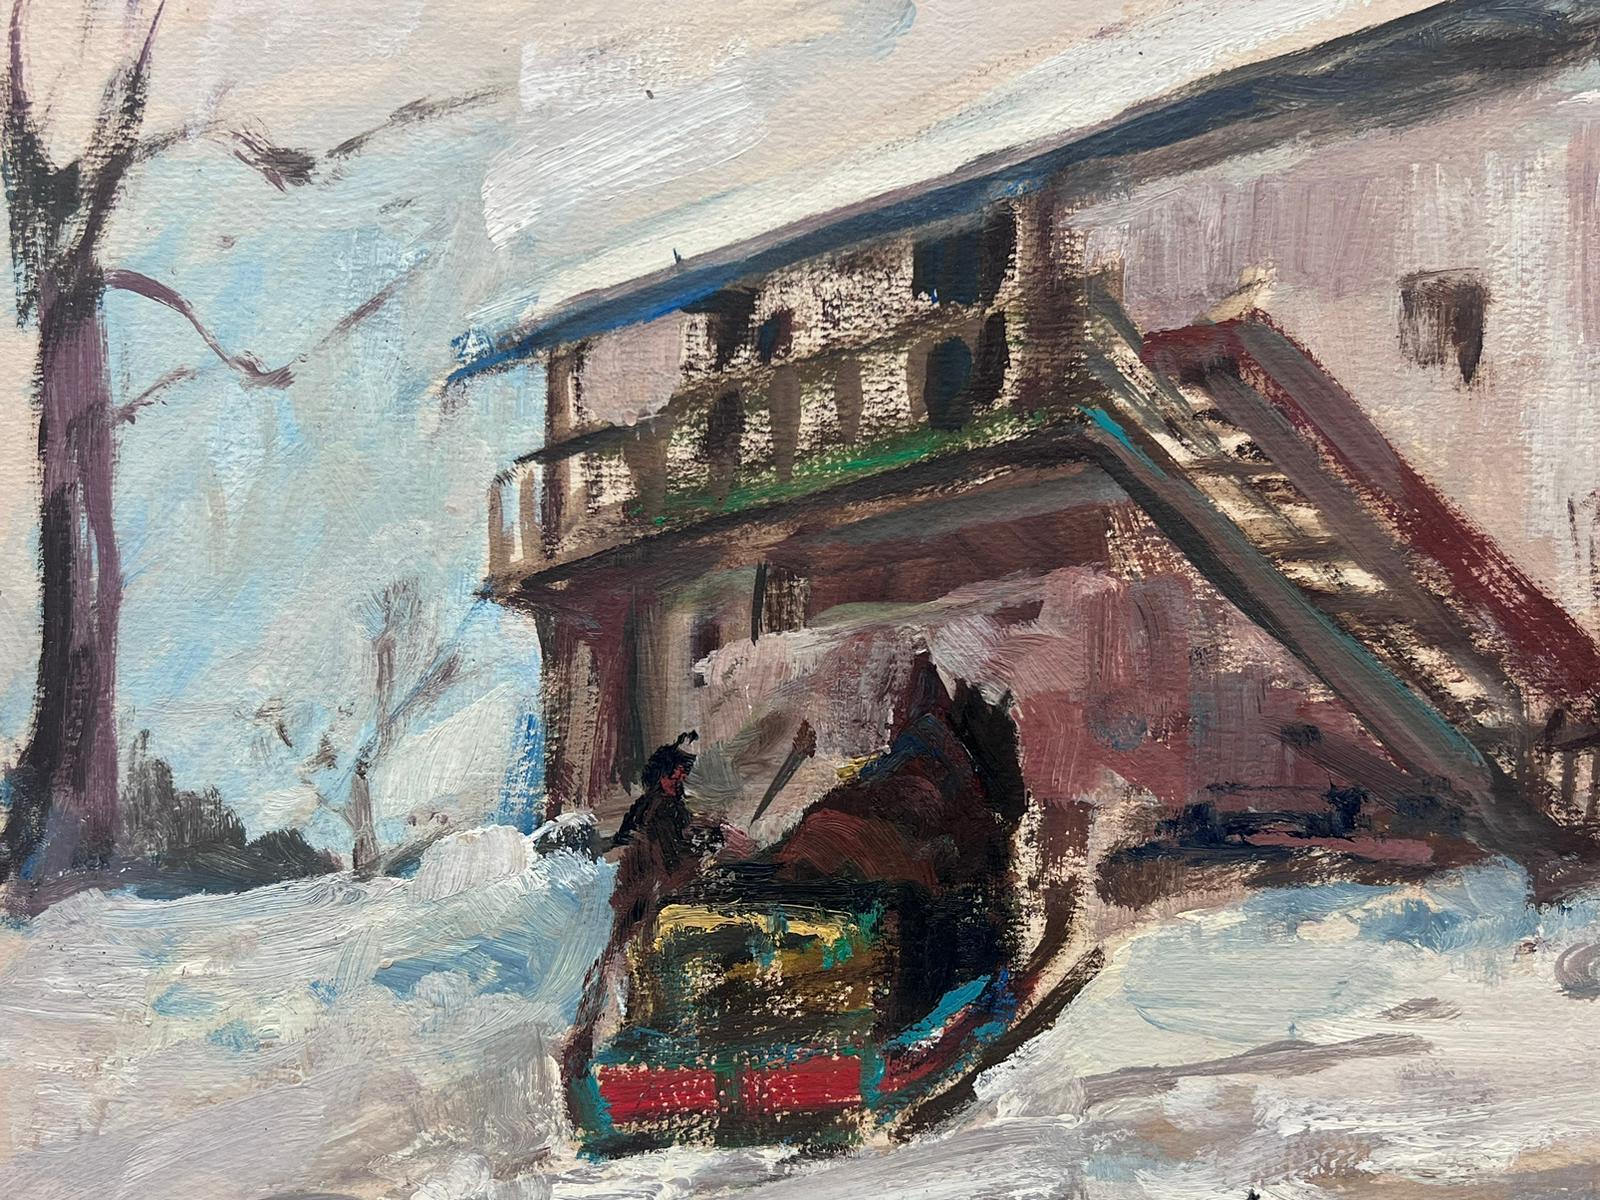 Figuren in Winter-Schneeflocken-Ski Chalet-Landschaft, Vintage, Französisch-impressionistisches Öl (Impressionismus), Painting, von Leon Hatot